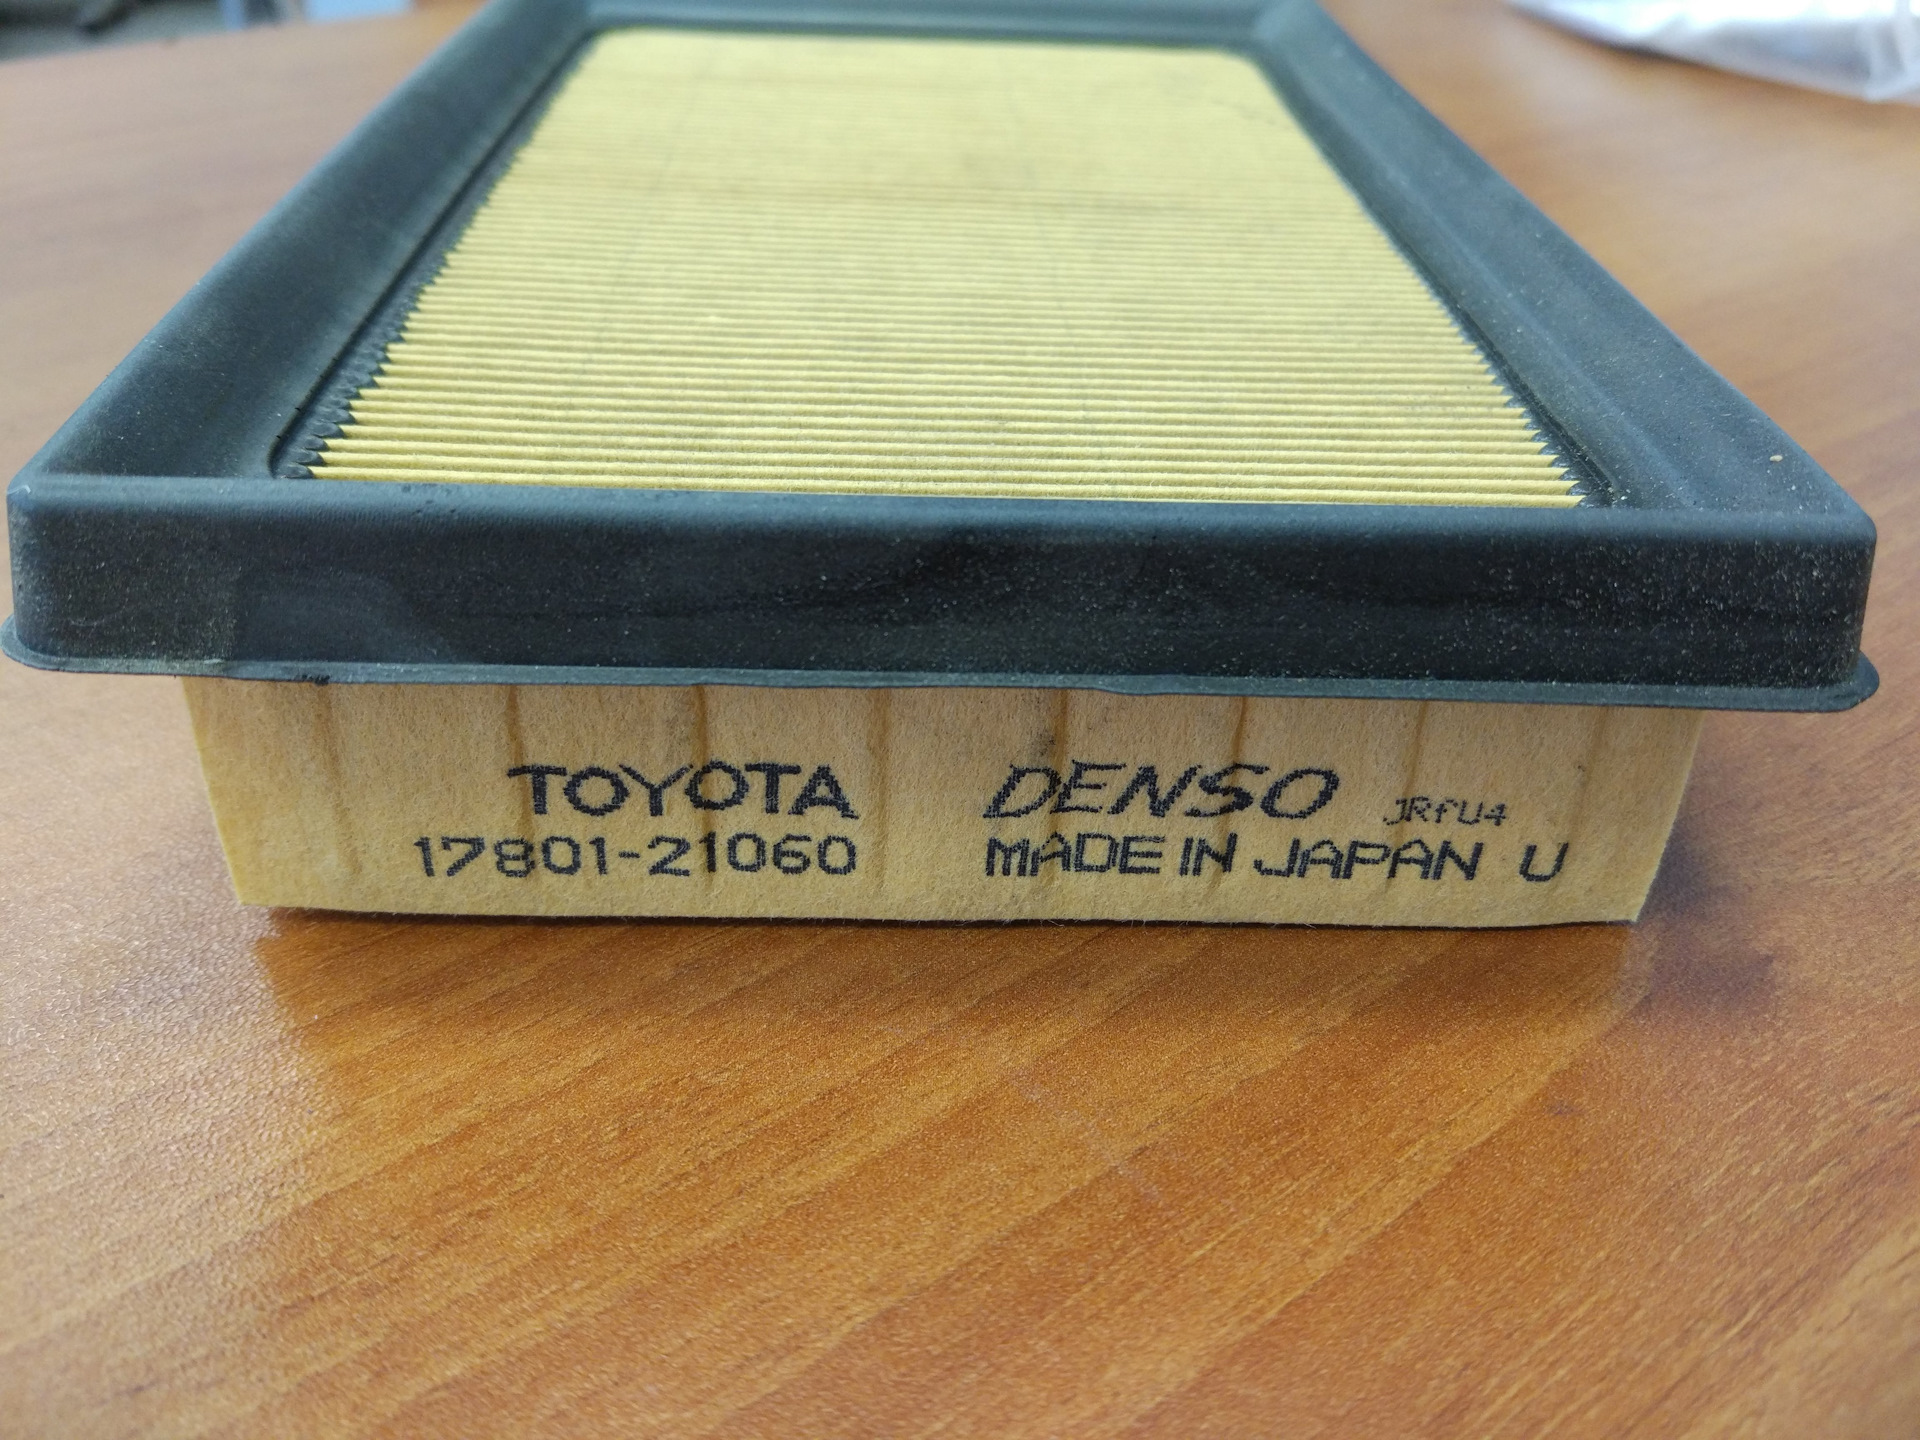 Маркировка воздушного фильтра. Toyota passo воздушный фильтр. 17801-21060. 17801-21060 Фильтр воздушный. Тойота 17801-21060.